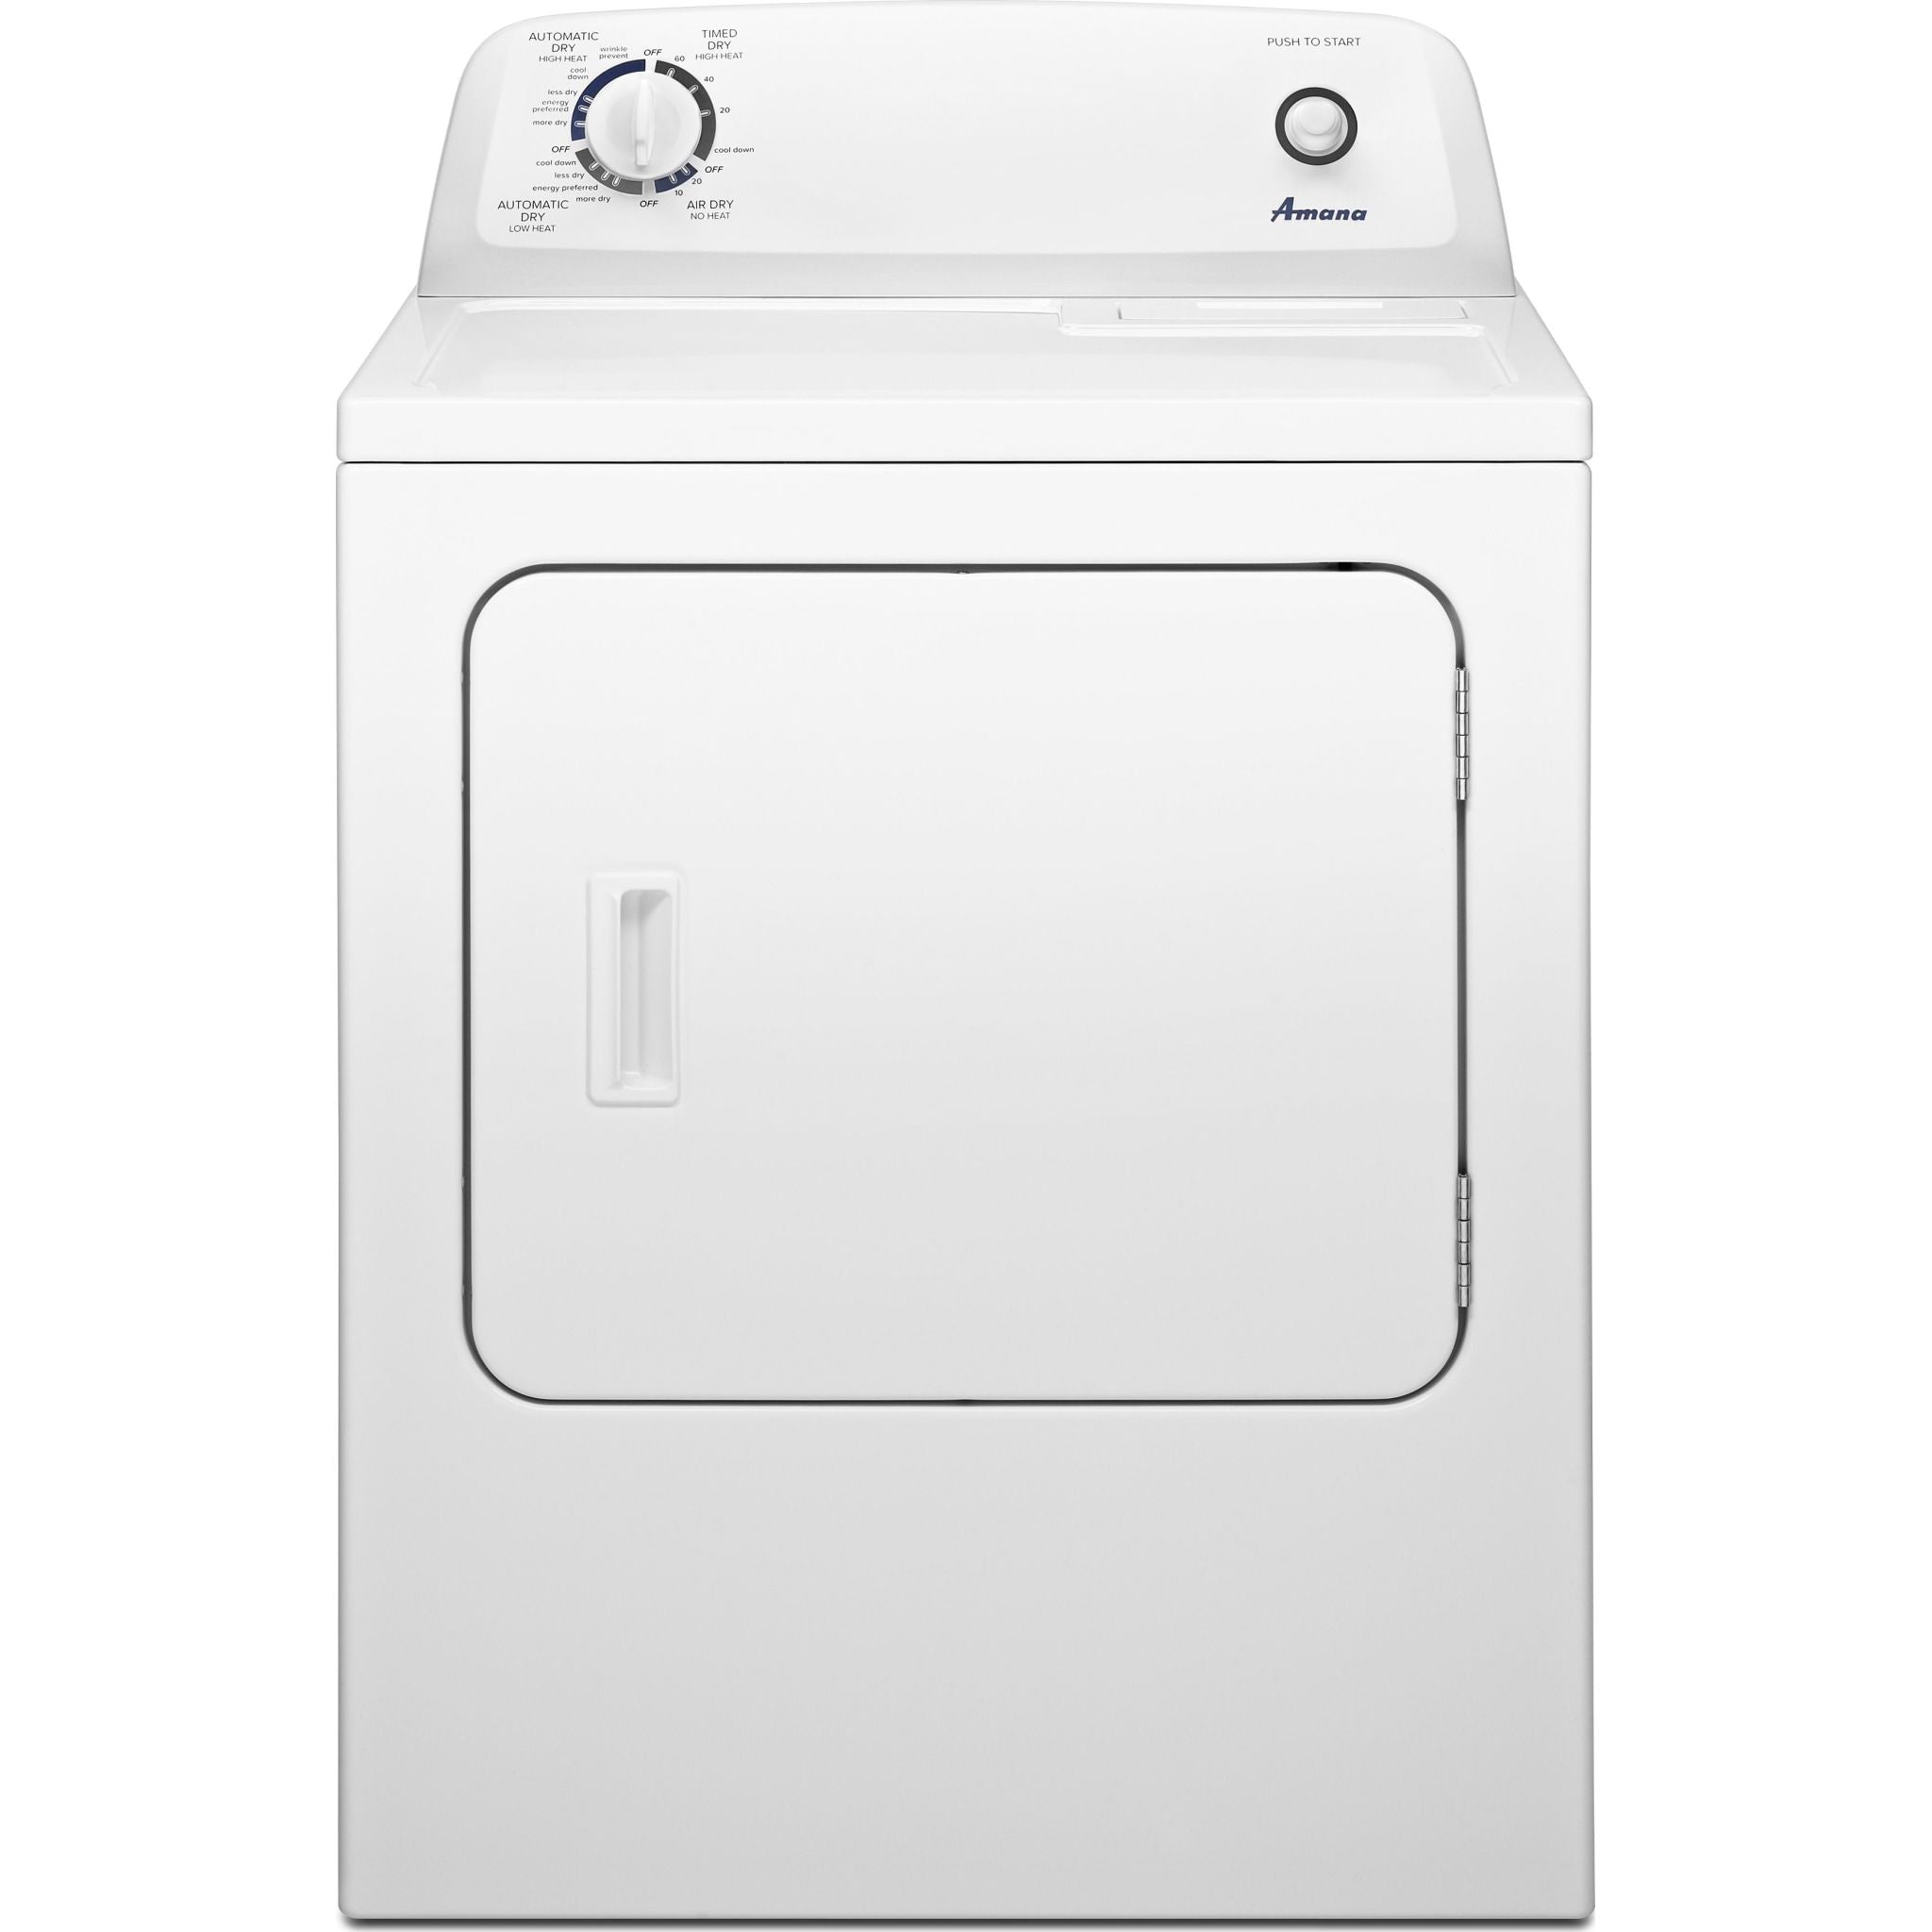 Amana, Amana Gas Dryer (NGD4655EW) - White